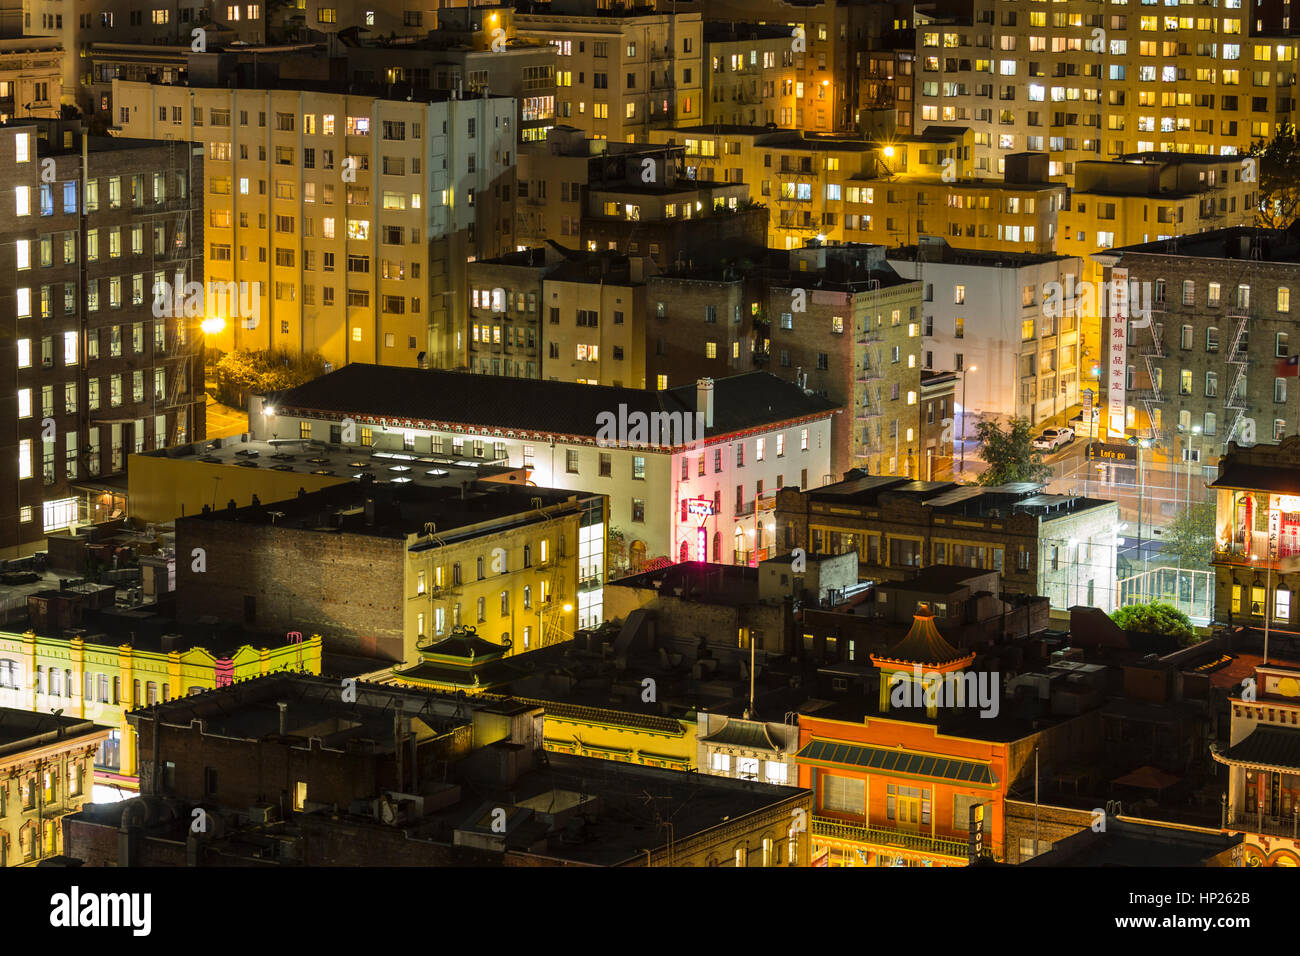 San Francisco, Californie, USA - 13 janvier 2013 : Editorial vew de San Francisco's Chinatown quartier touristique de nuit. Banque D'Images